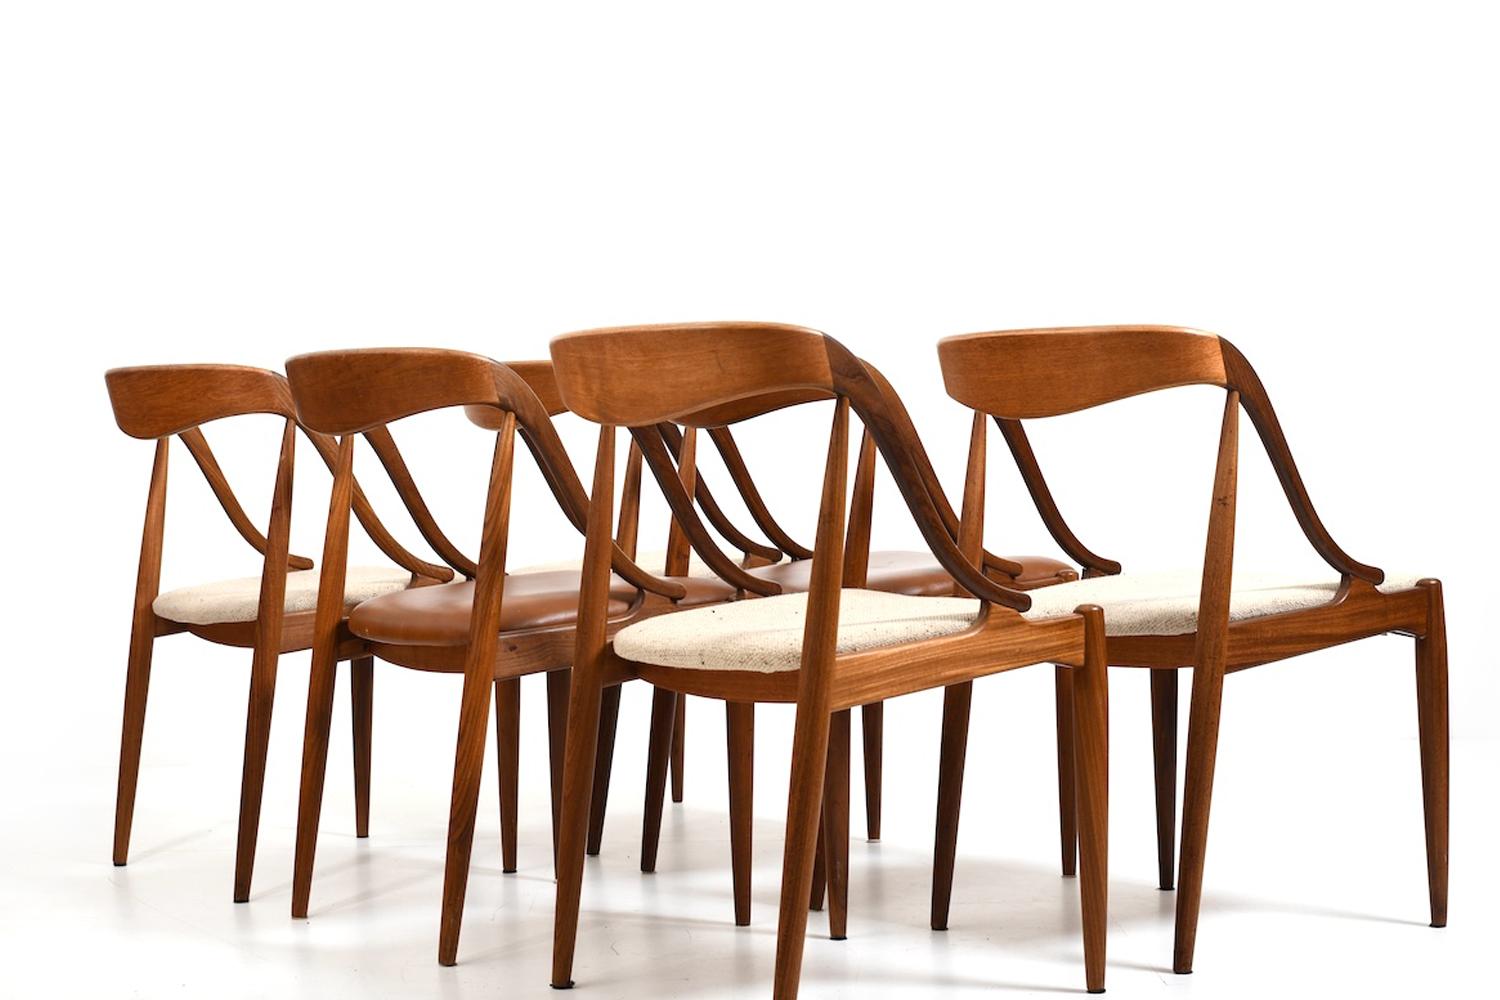 Esszimmerstühle aus Teakholz von Johannes Andersen, 1960er Jahre (20. Jahrhundert) im Angebot